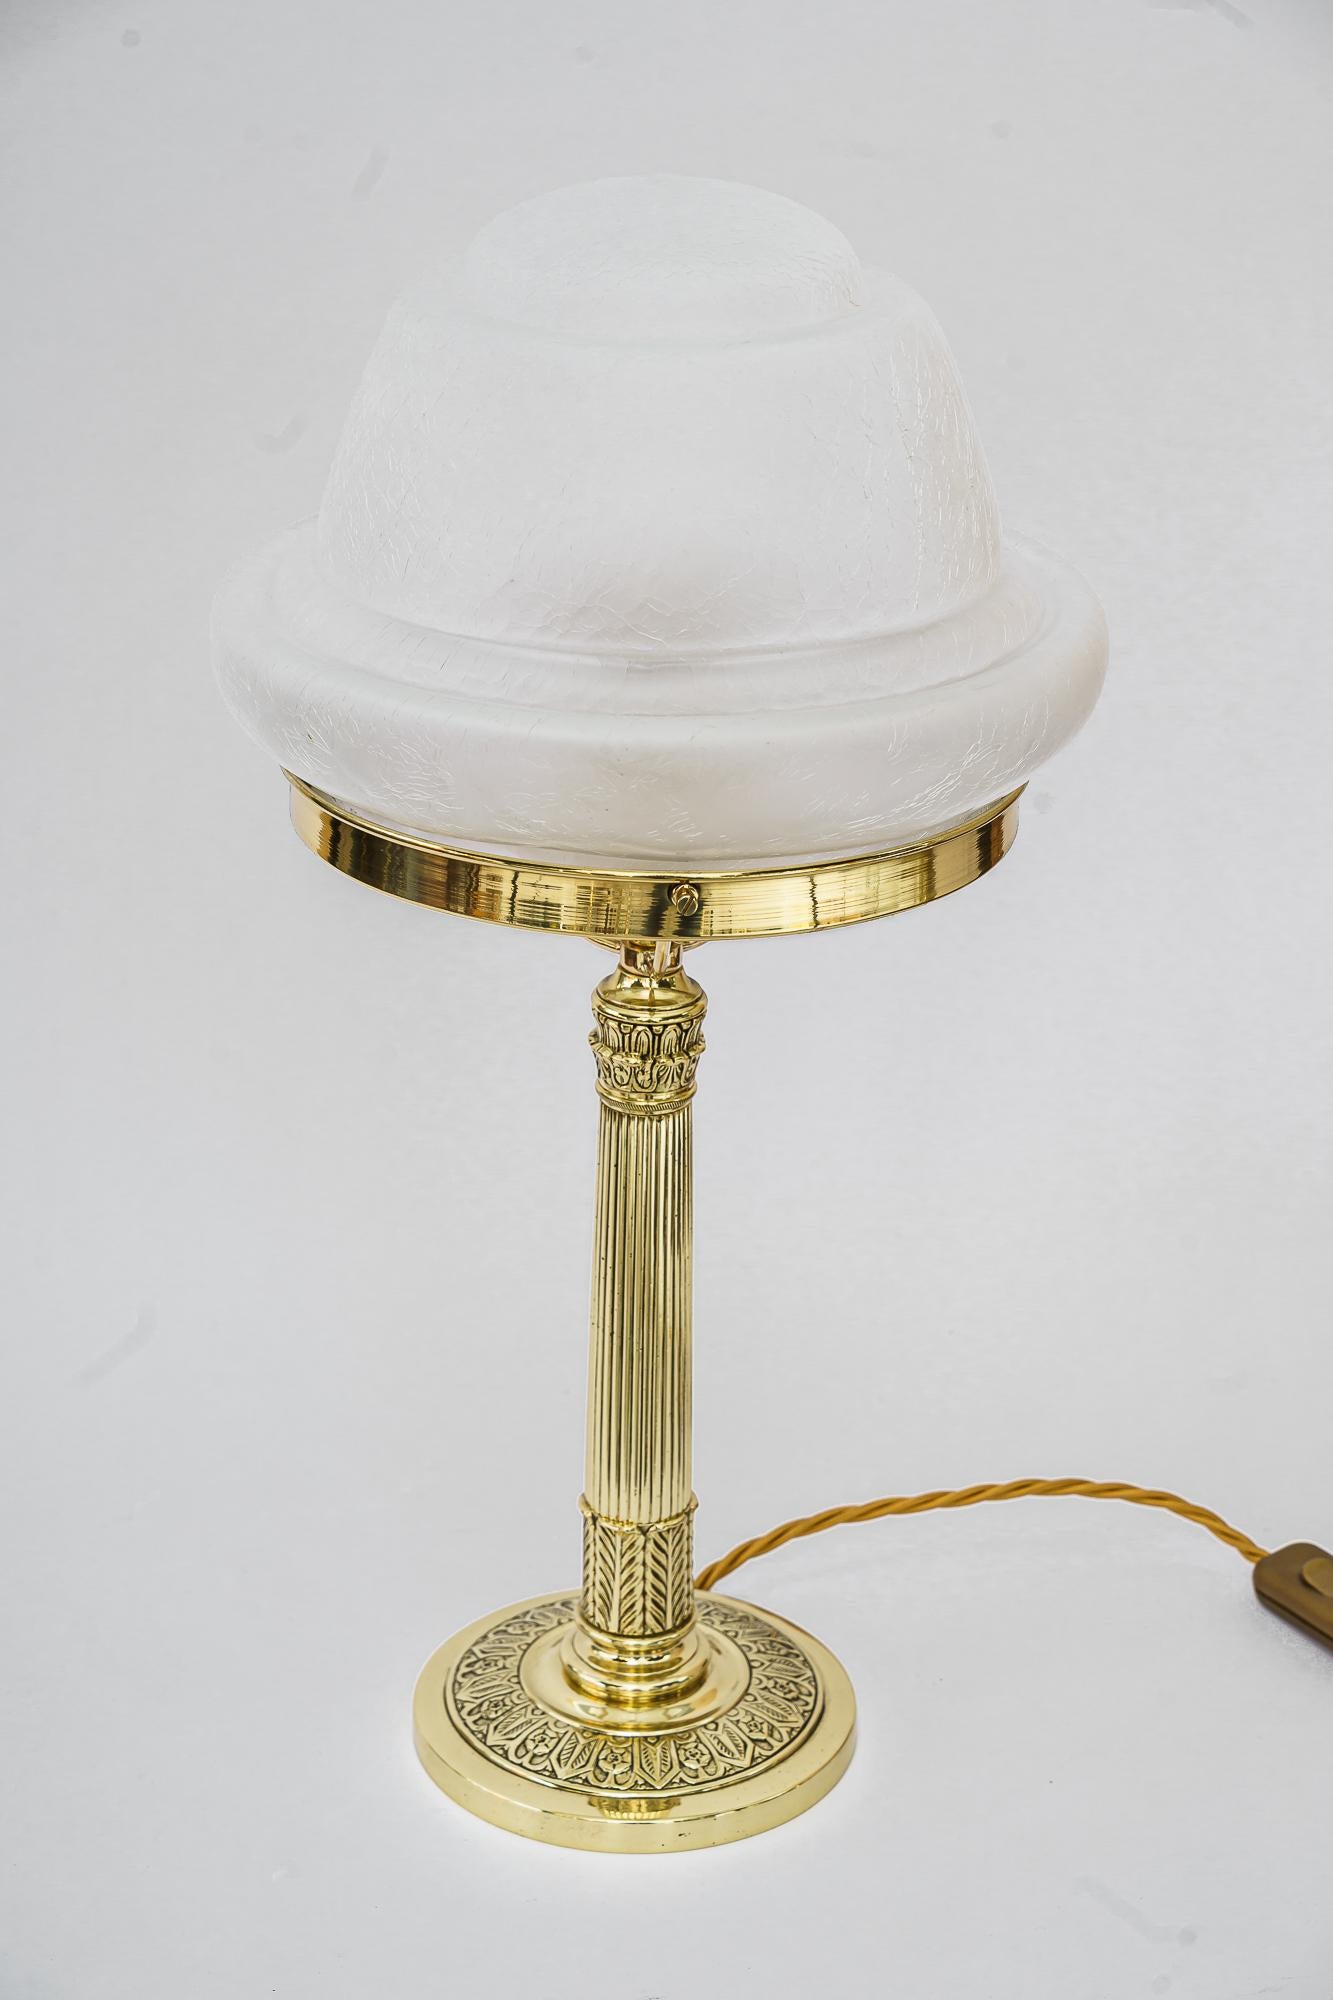 Art-Déco-Tischlampe Vienna aus den 1920er Jahren
Poliert und emailliert
Original-Antikglas-Schirm